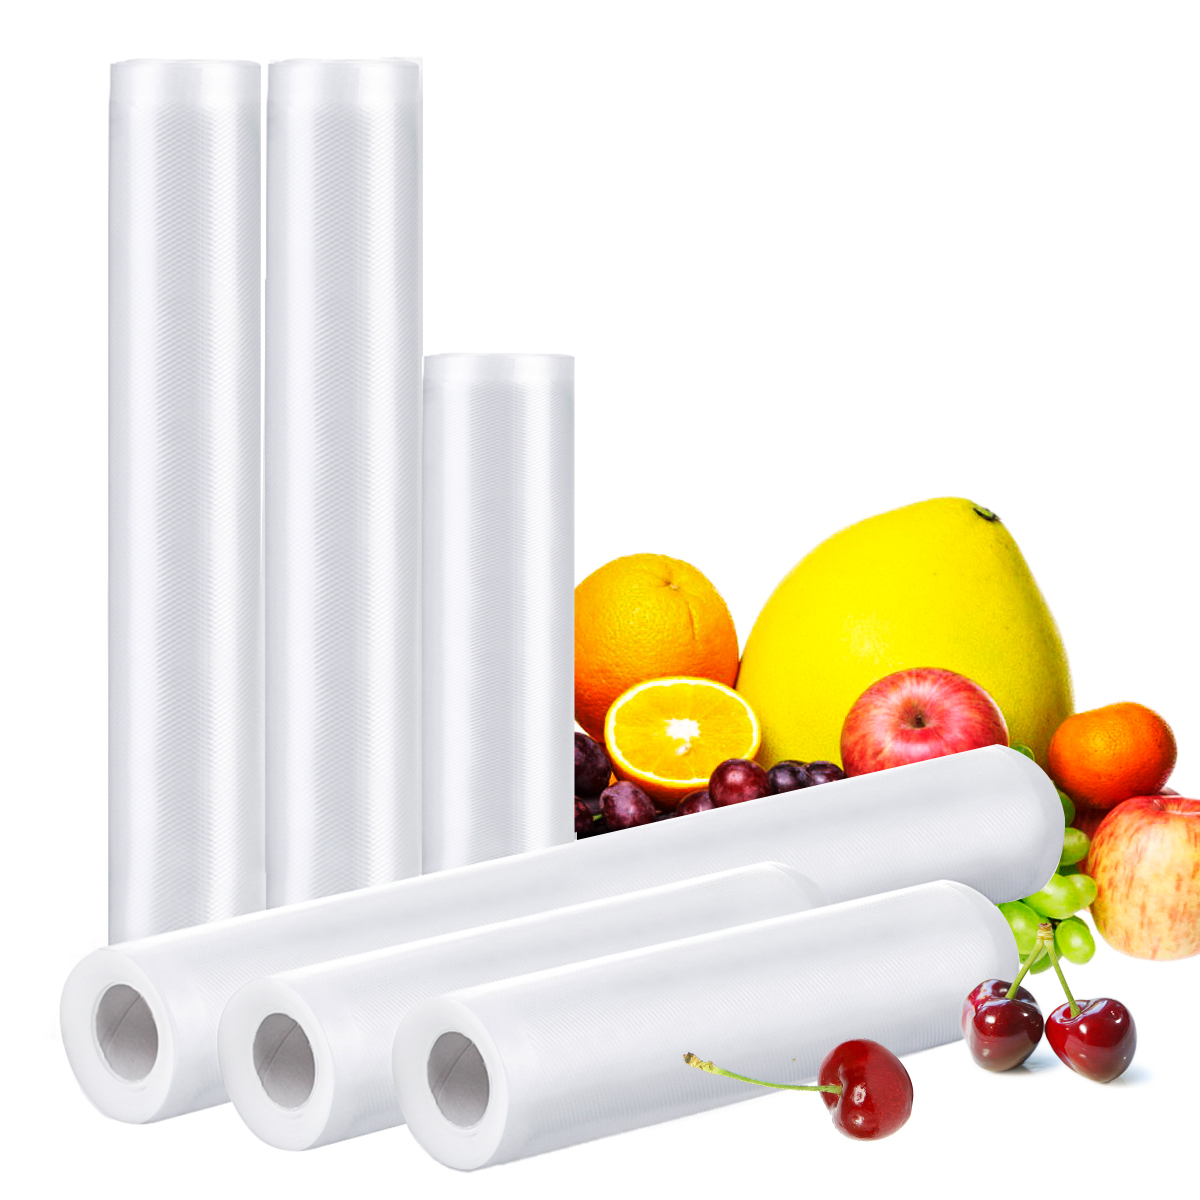 6-Roll-Audew-Vacuum-Sealing-Film-Household-Food-Vegetable-BPA-Free-1899728-6